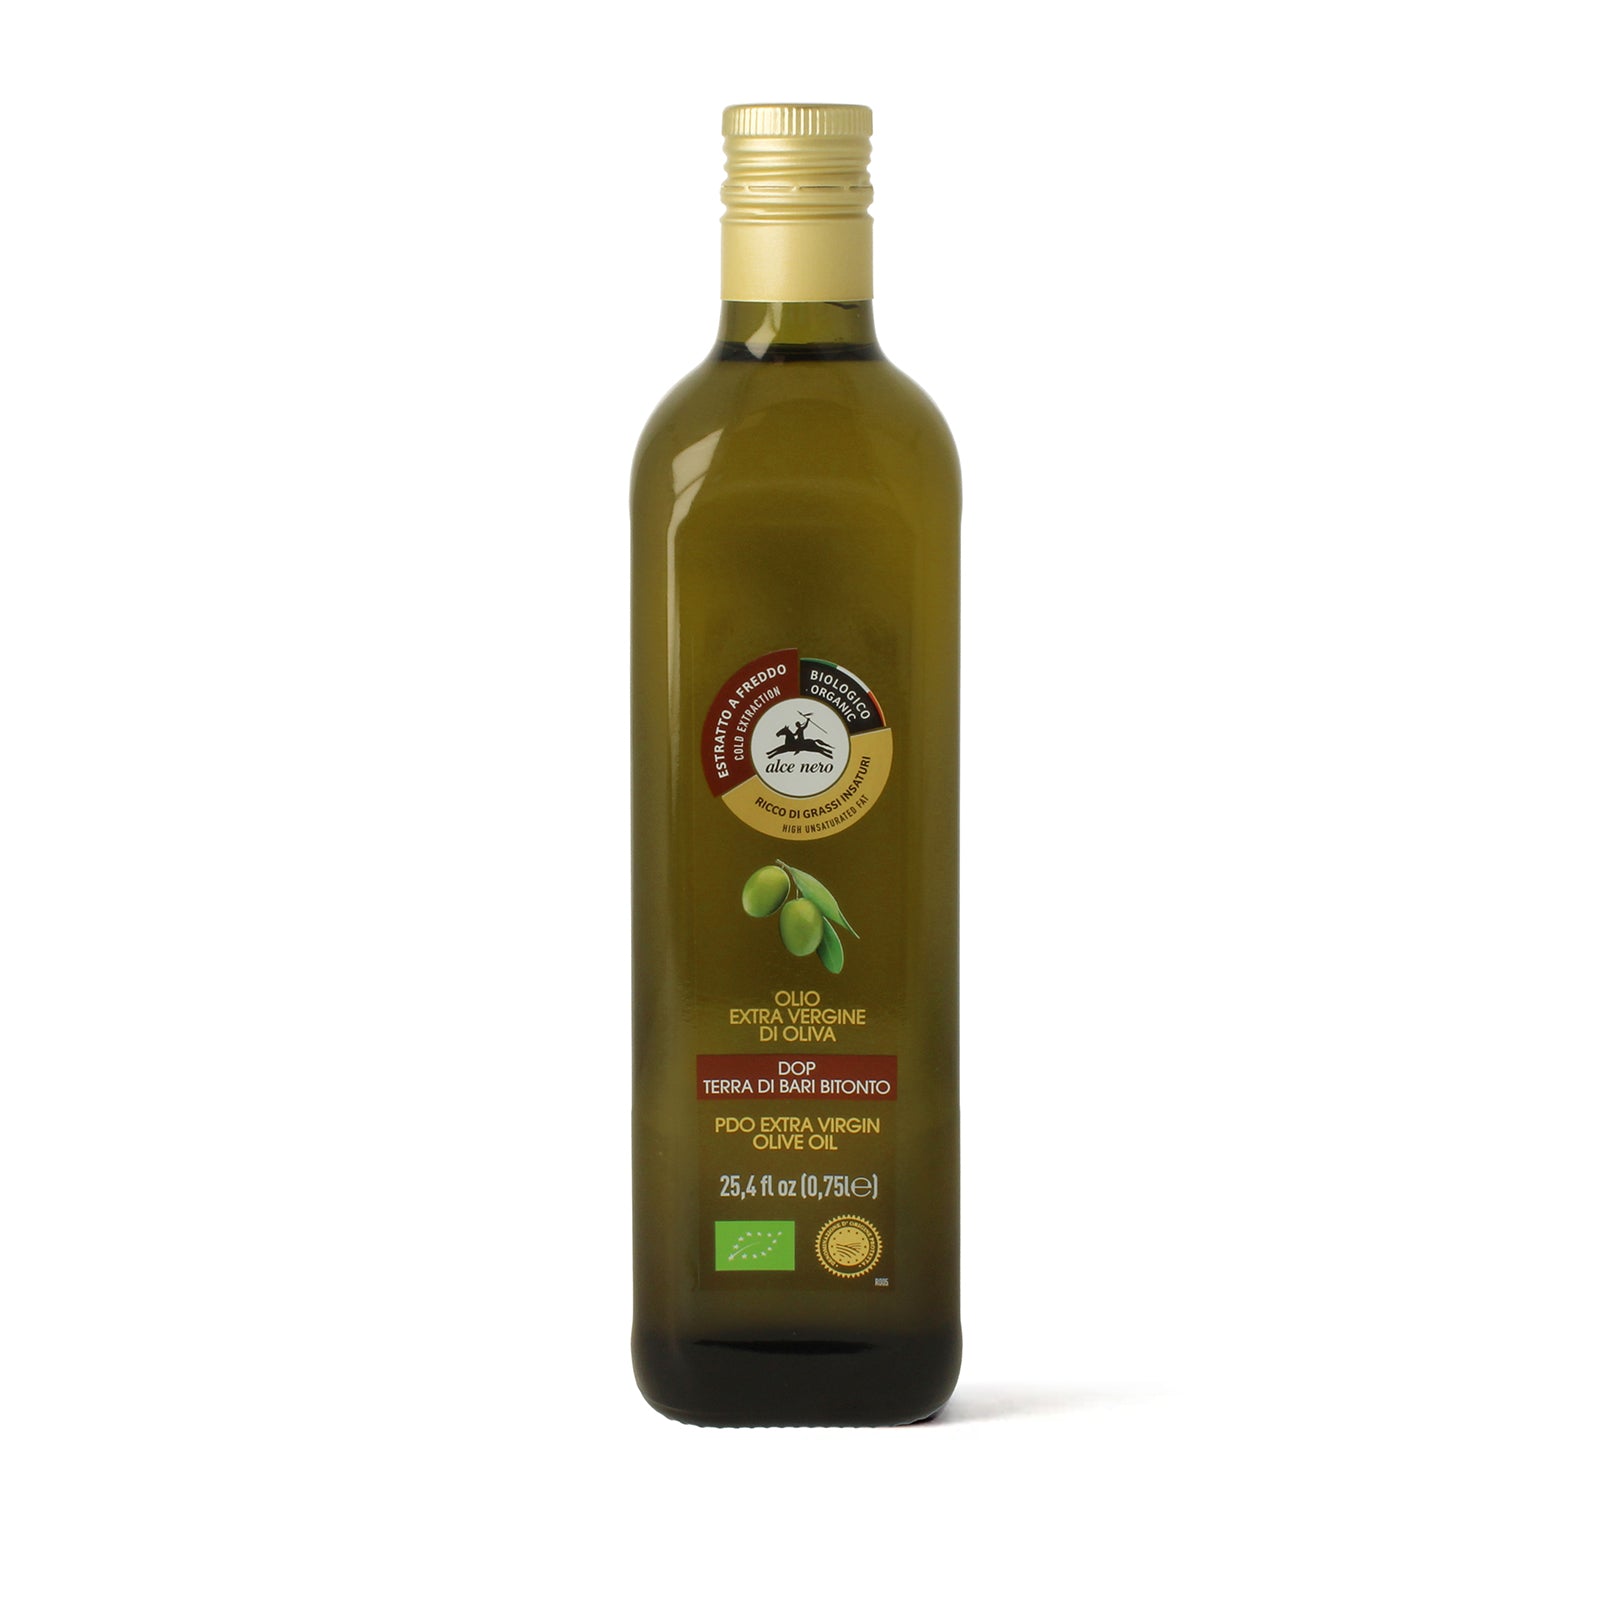 Olio extra vergine di oliva D.O.P. - Terra di Bari Bitonto biologico